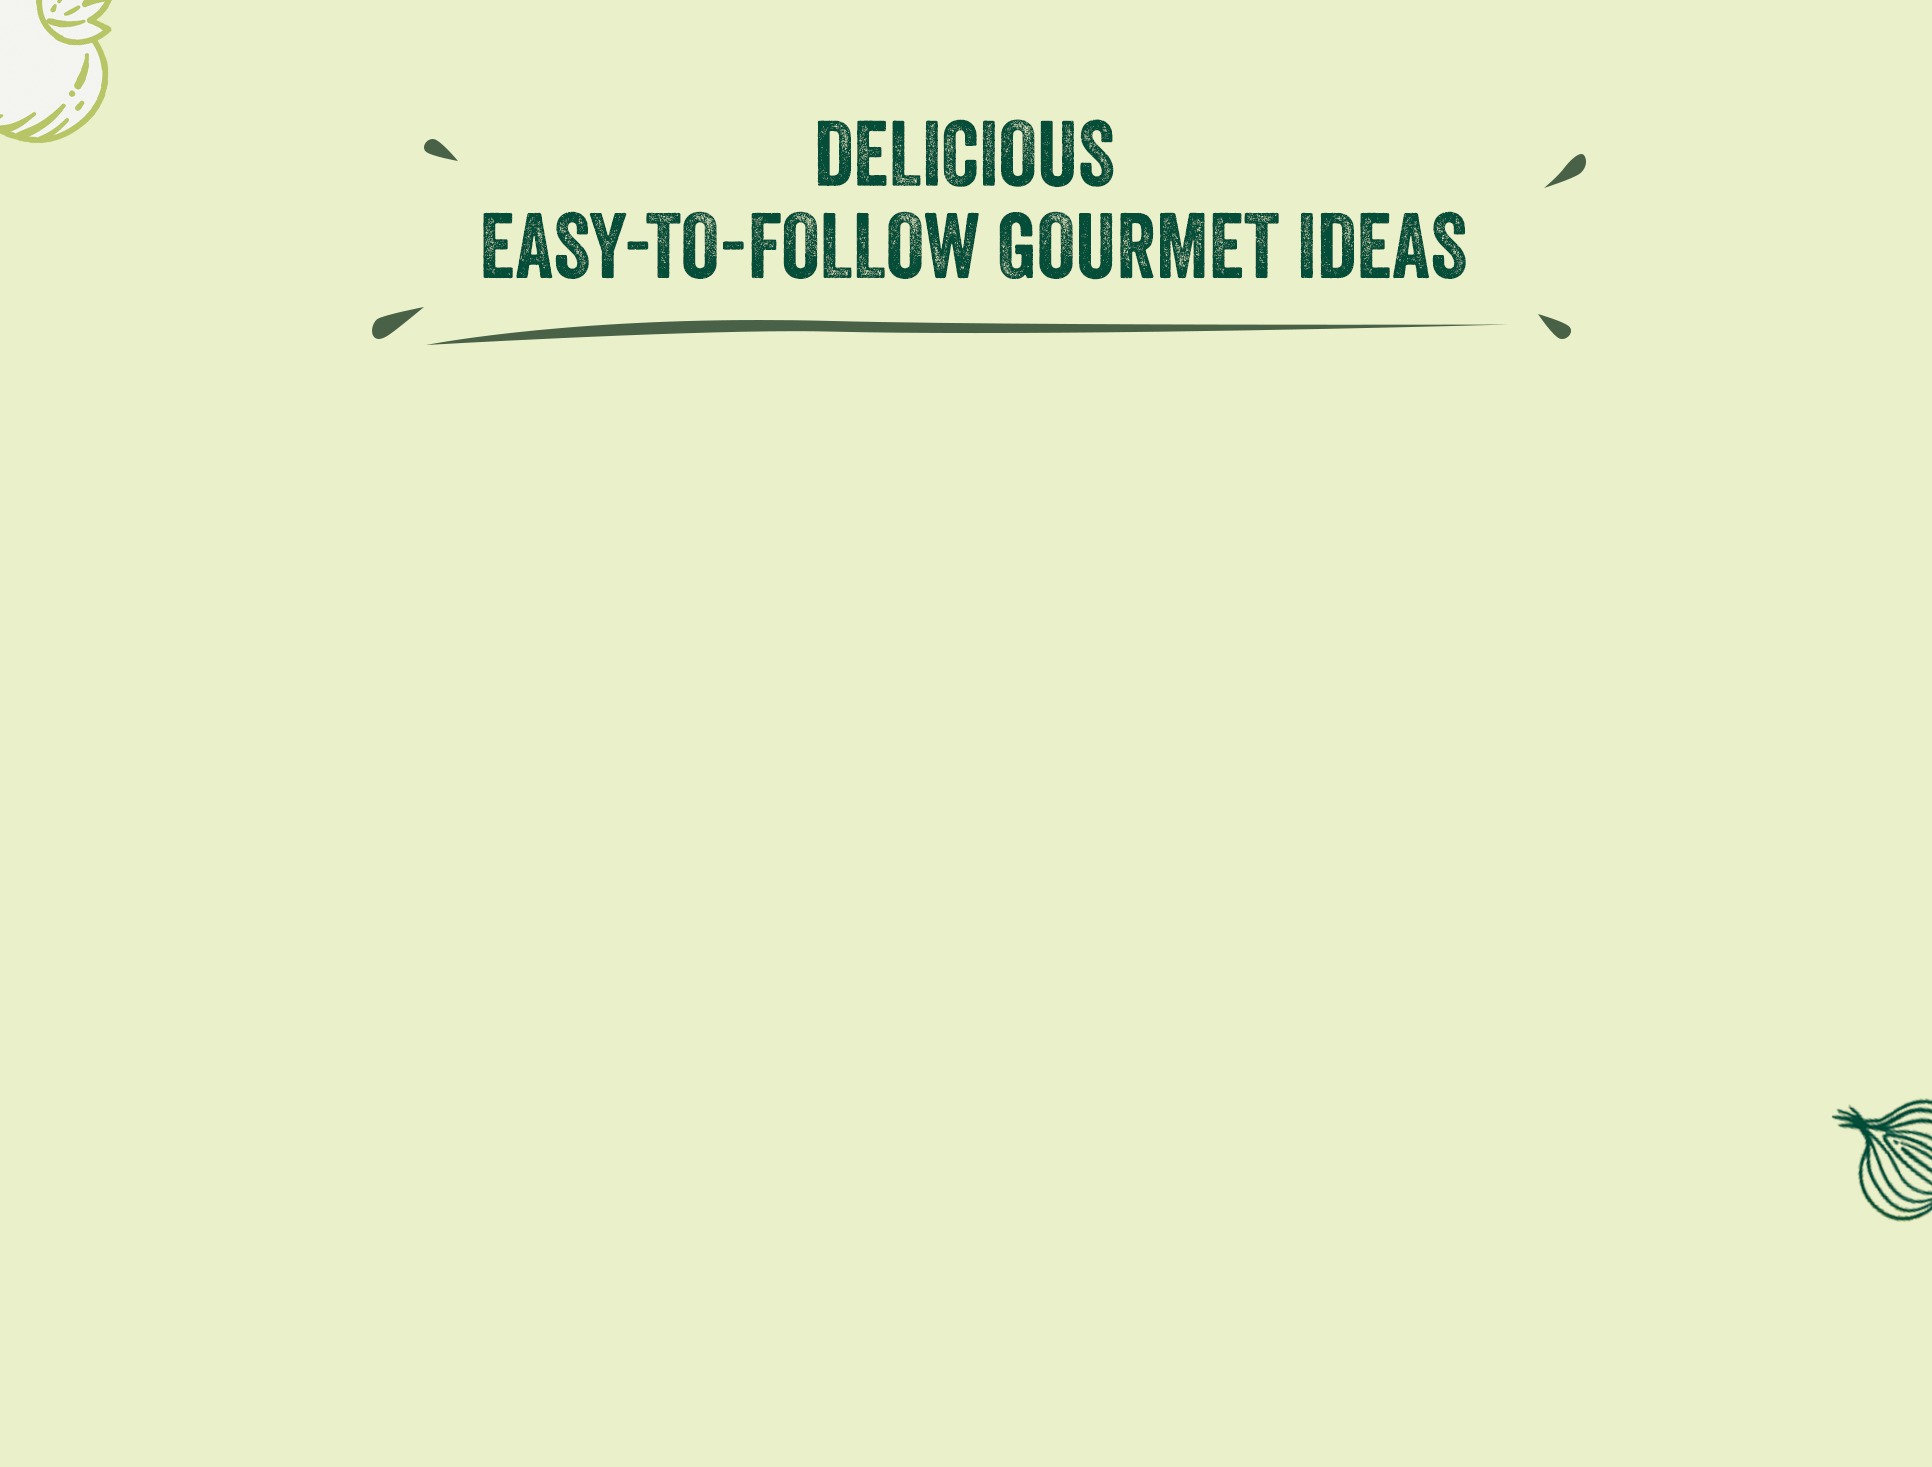 Delicious easy-to-follow gourmet ideas